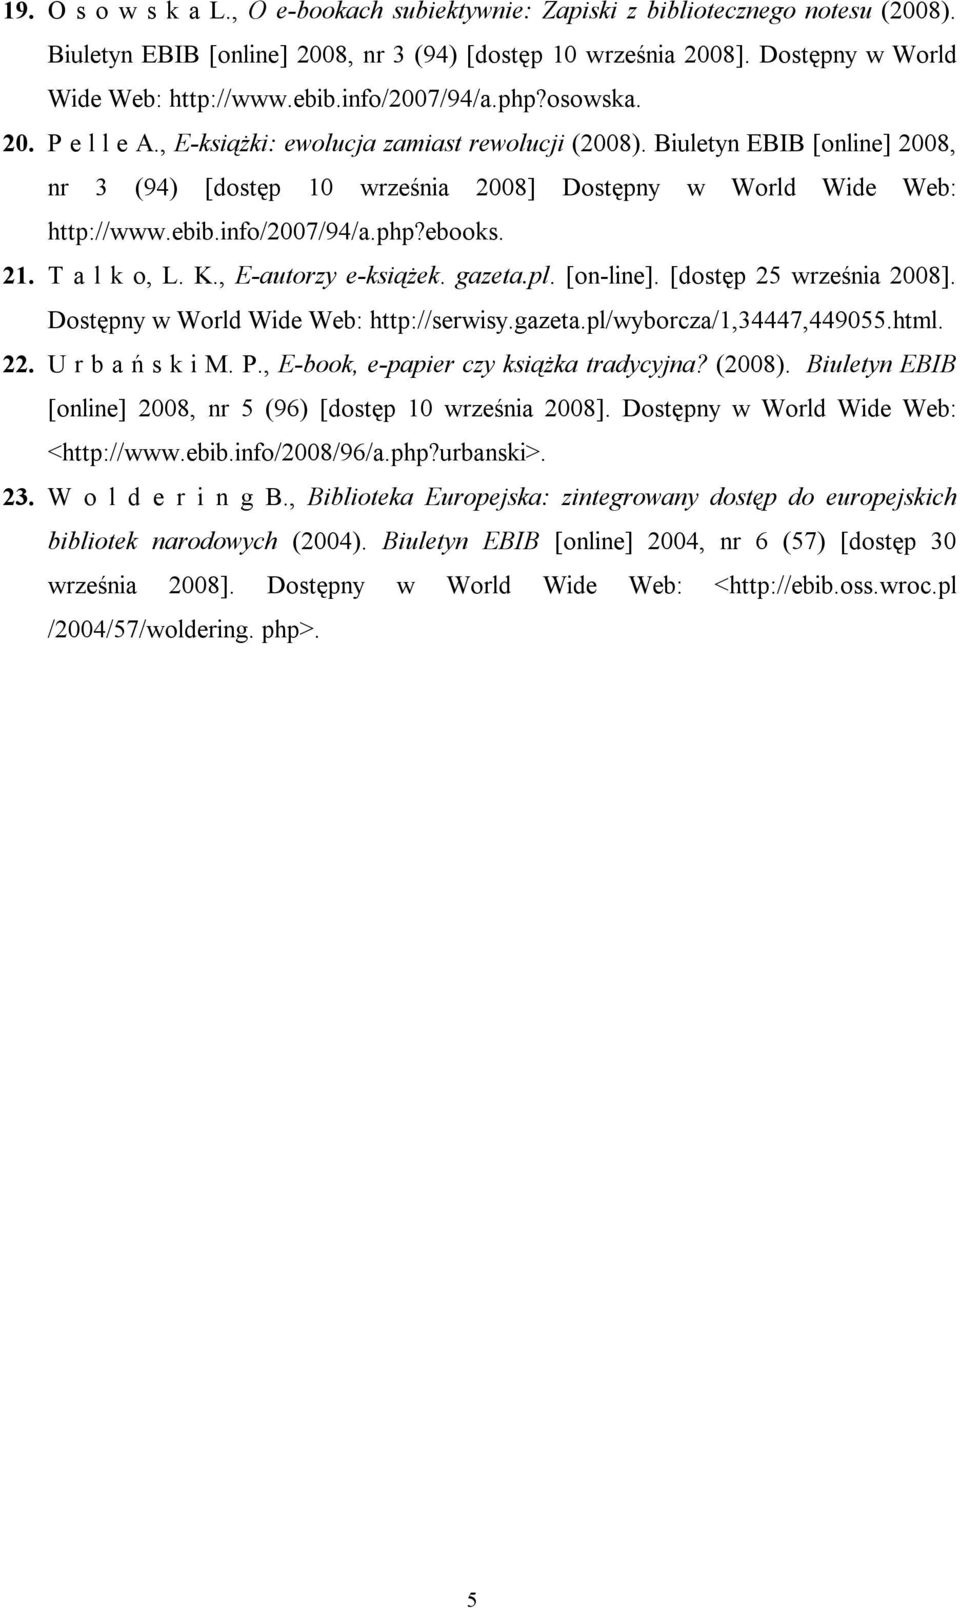 info/2007/94/a.php?ebooks. 21. T a l k o, L. K., E-autorzy e-książek. gazeta.pl. [on-line]. [dostęp 25 września 2008]. Dostępny w World Wide Web: http://serwisy.gazeta.pl/wyborcza/1,34447,449055.html.